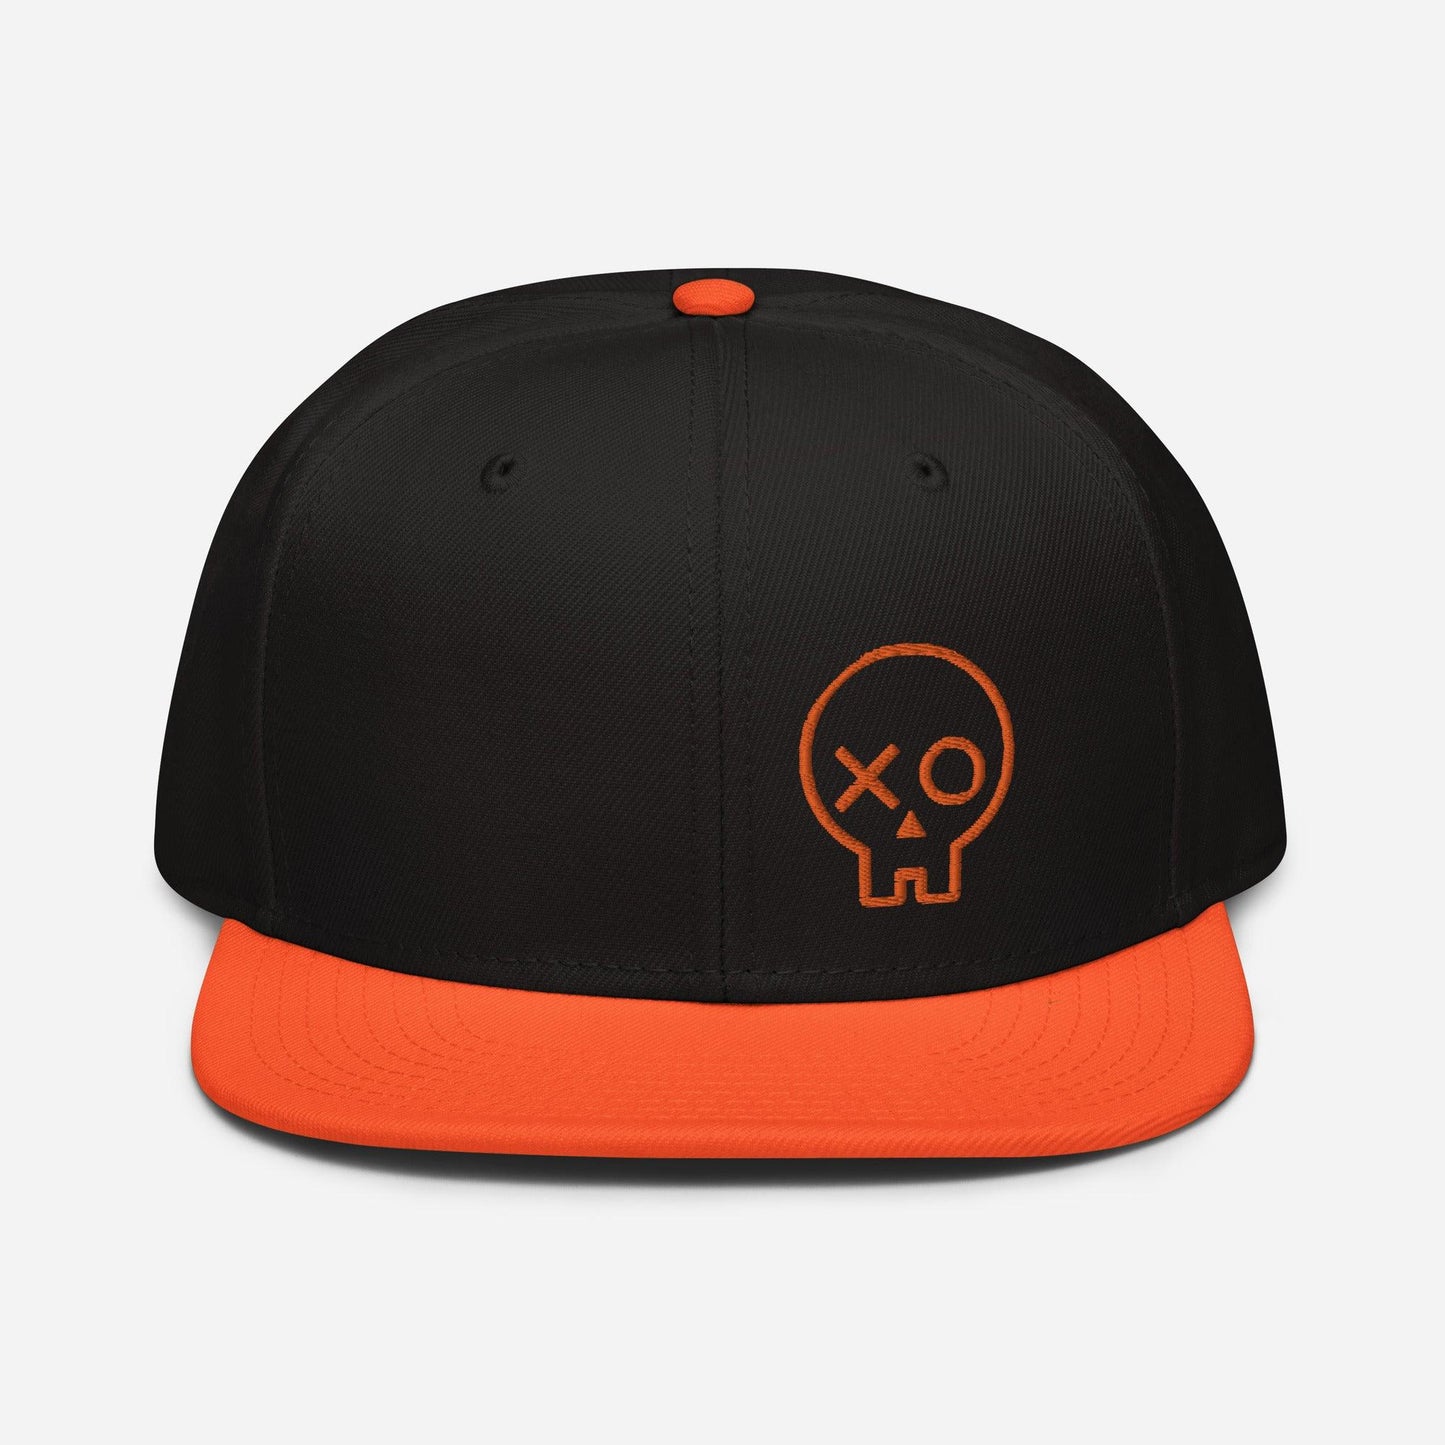 Violent Art Logo Snapback Hat - Black / Orange - Violent Art Shop